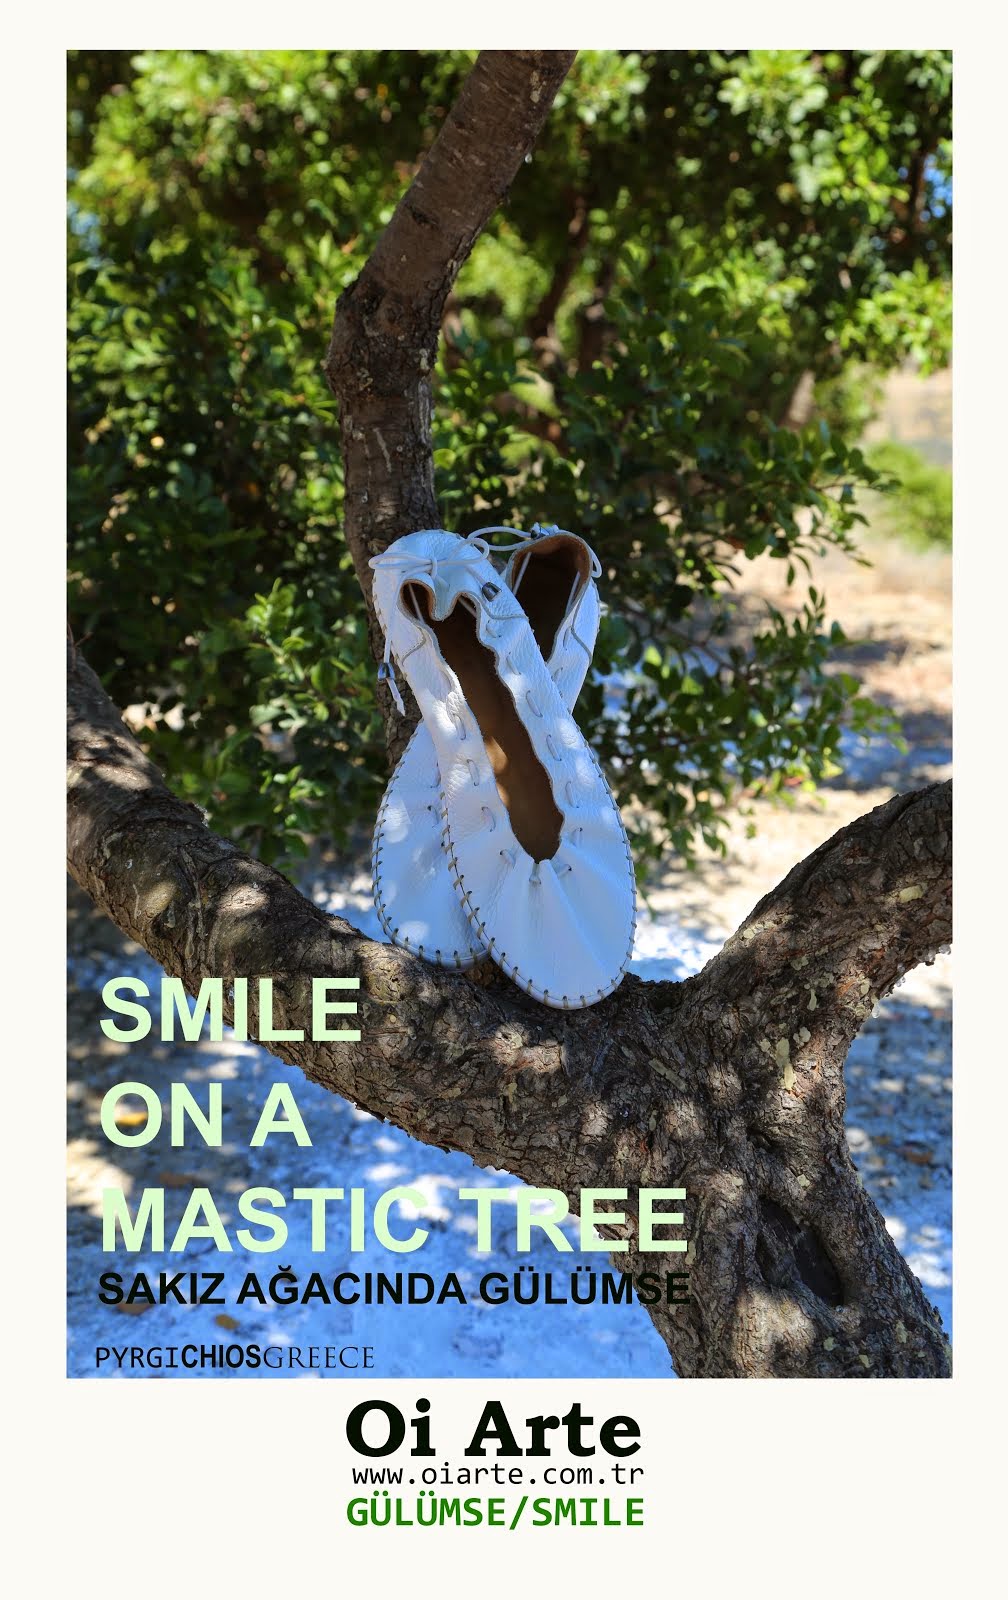 Sakız Ağacında Gülümse